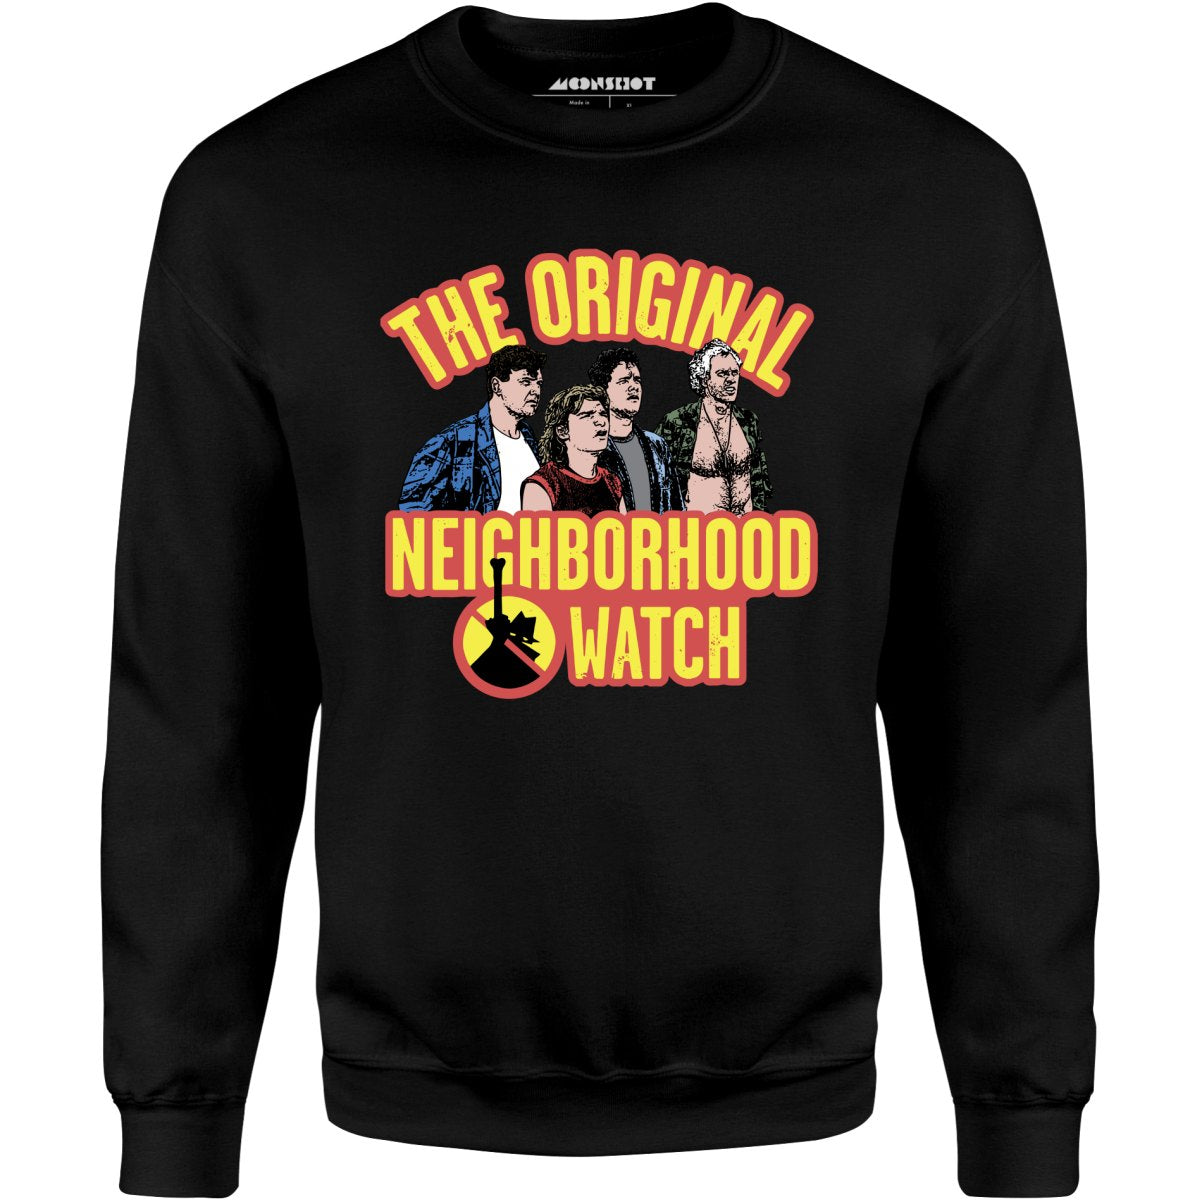 The Original Neighborhood Watch - Unisex Sweatshirt